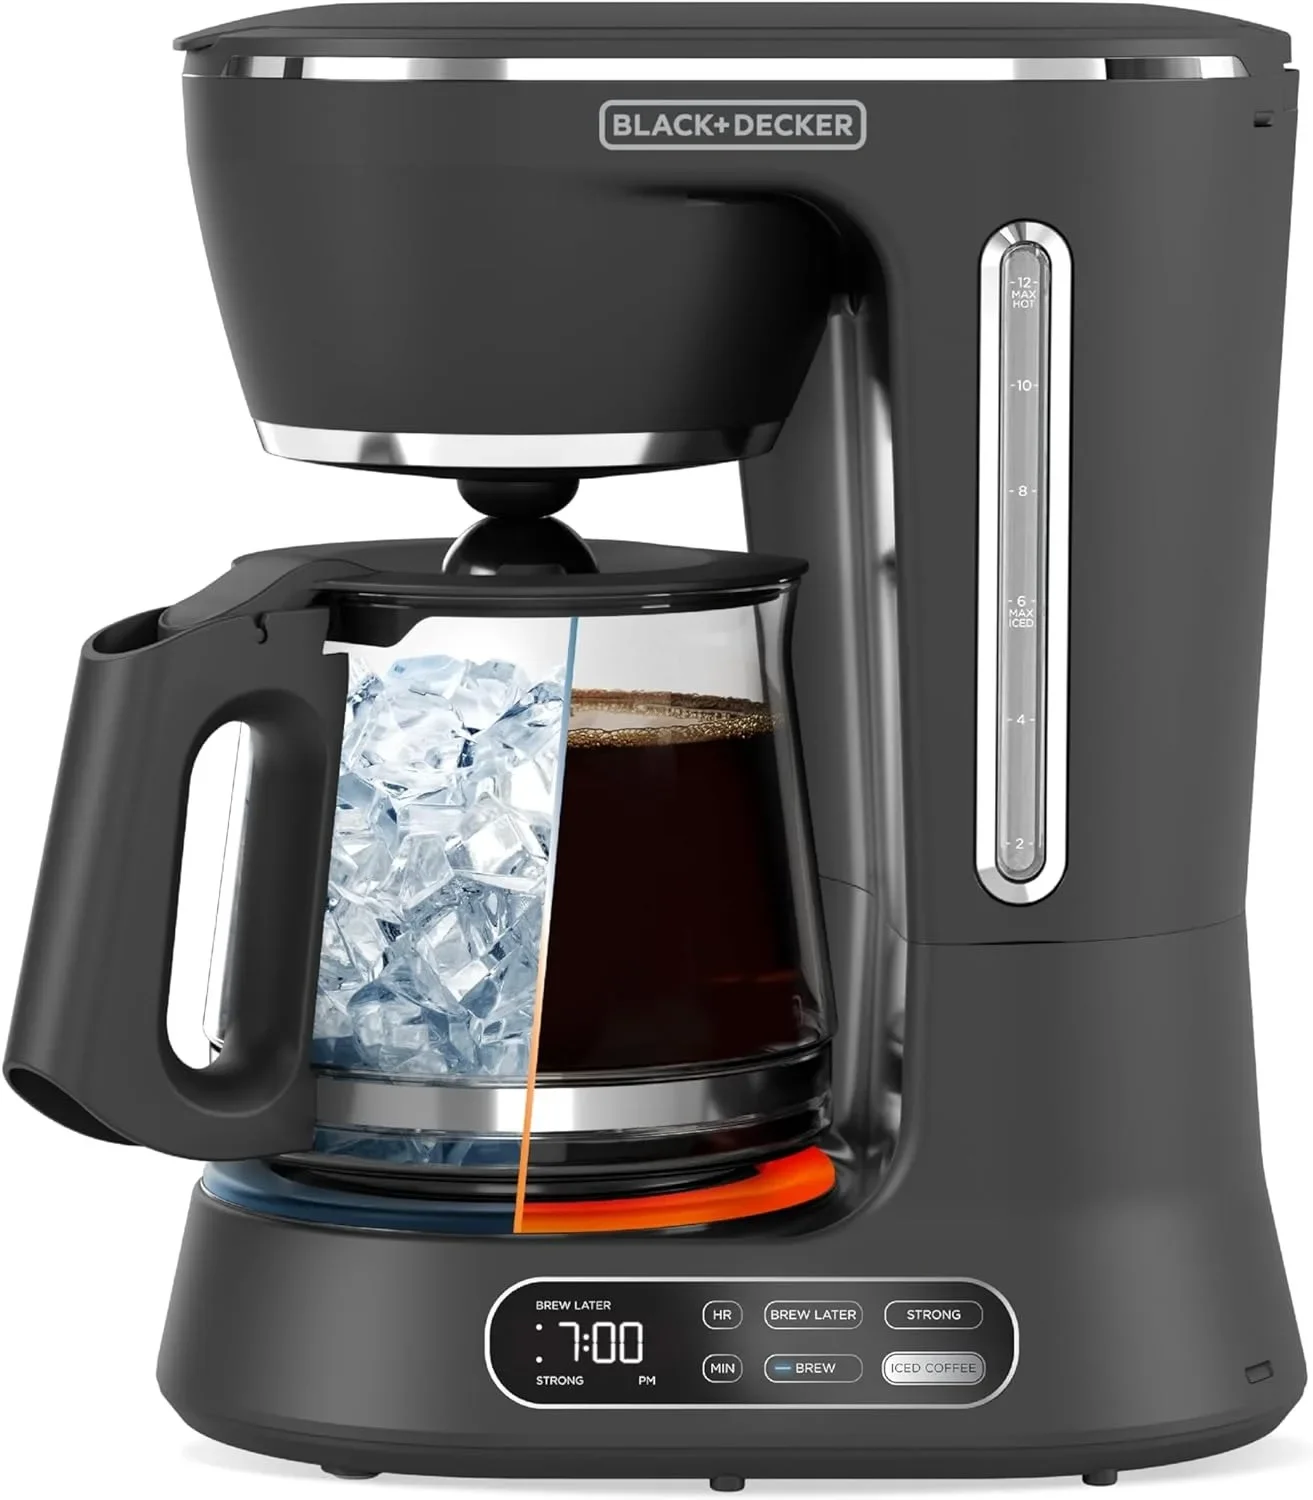 

Цифровая кофеварка с 12 чашками, CM0122, для приготовления холодного или горячего кофе, программируемая, быстрое прикосновение, 4 часа сохранения тепла